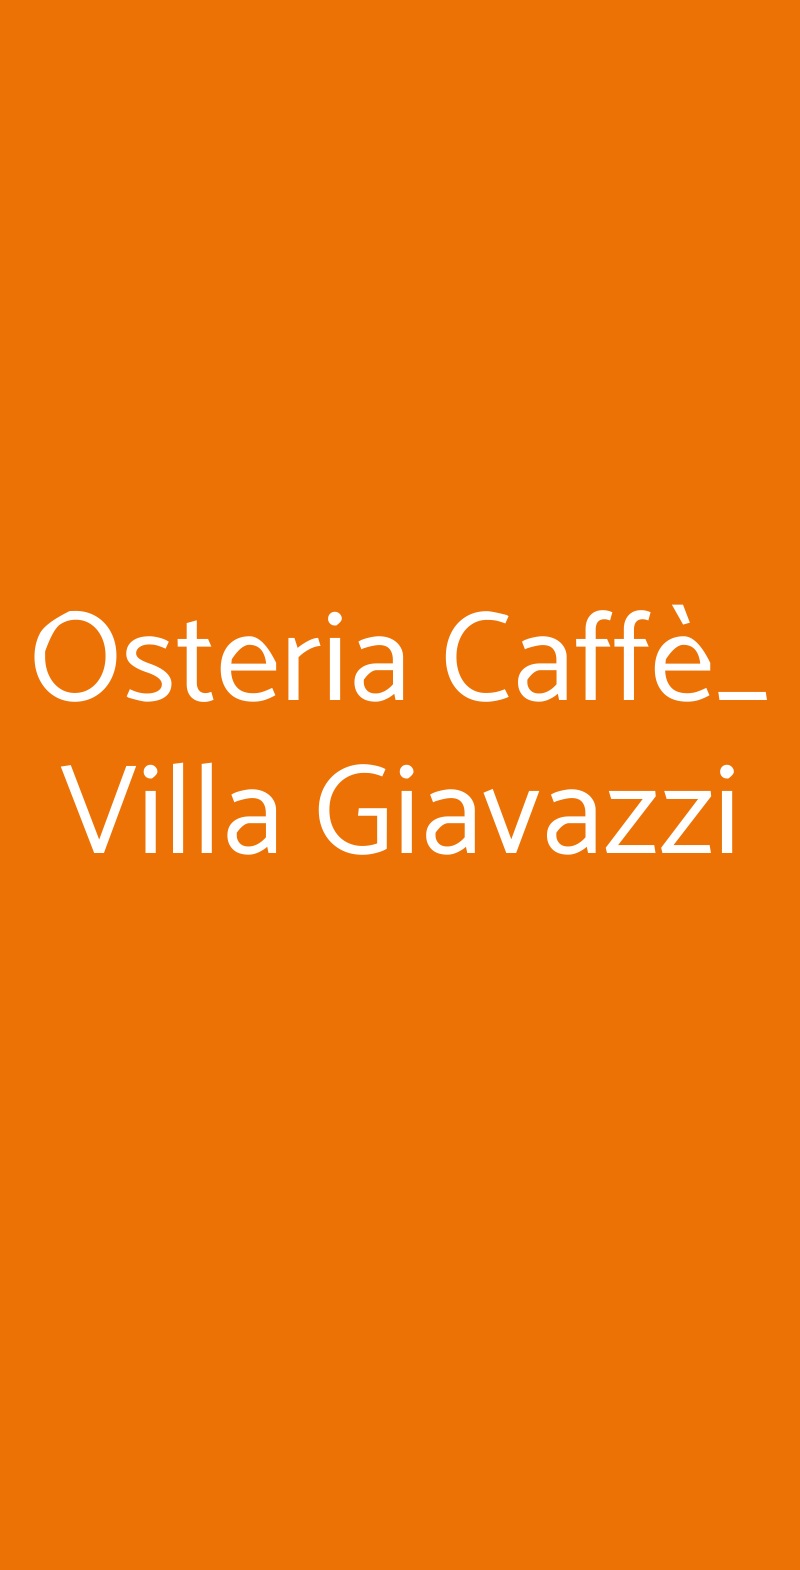 Osteria Caffè_ Villa Giavazzi Verdello menù 1 pagina